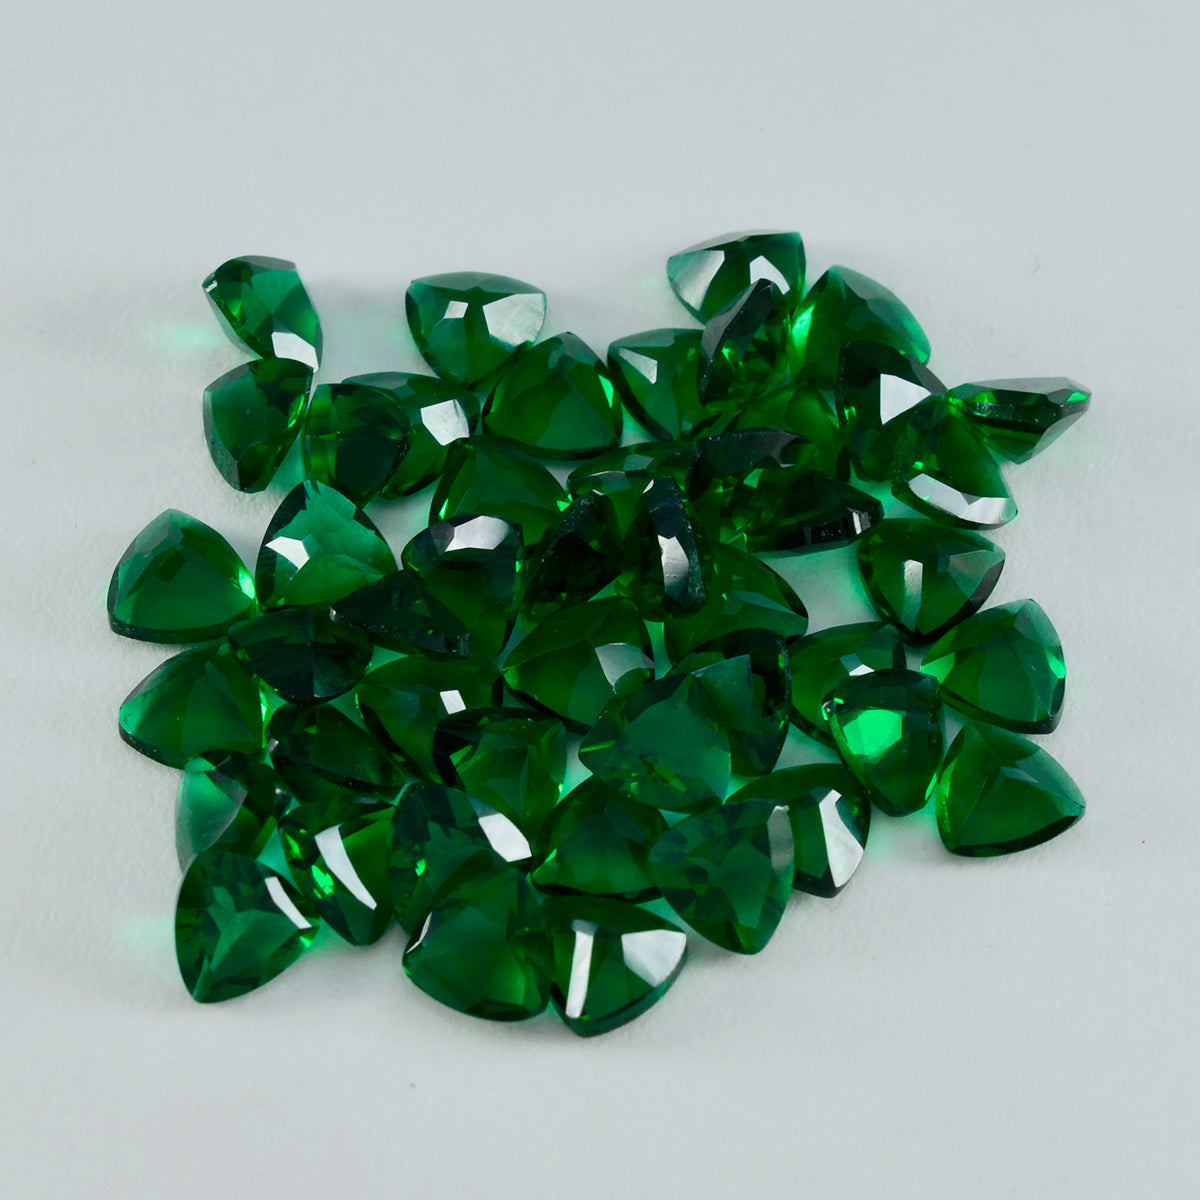 Riyogems 1 pièce émeraude verte cz à facettes 7x7mm forme trillion beauté qualité pierre précieuse en vrac